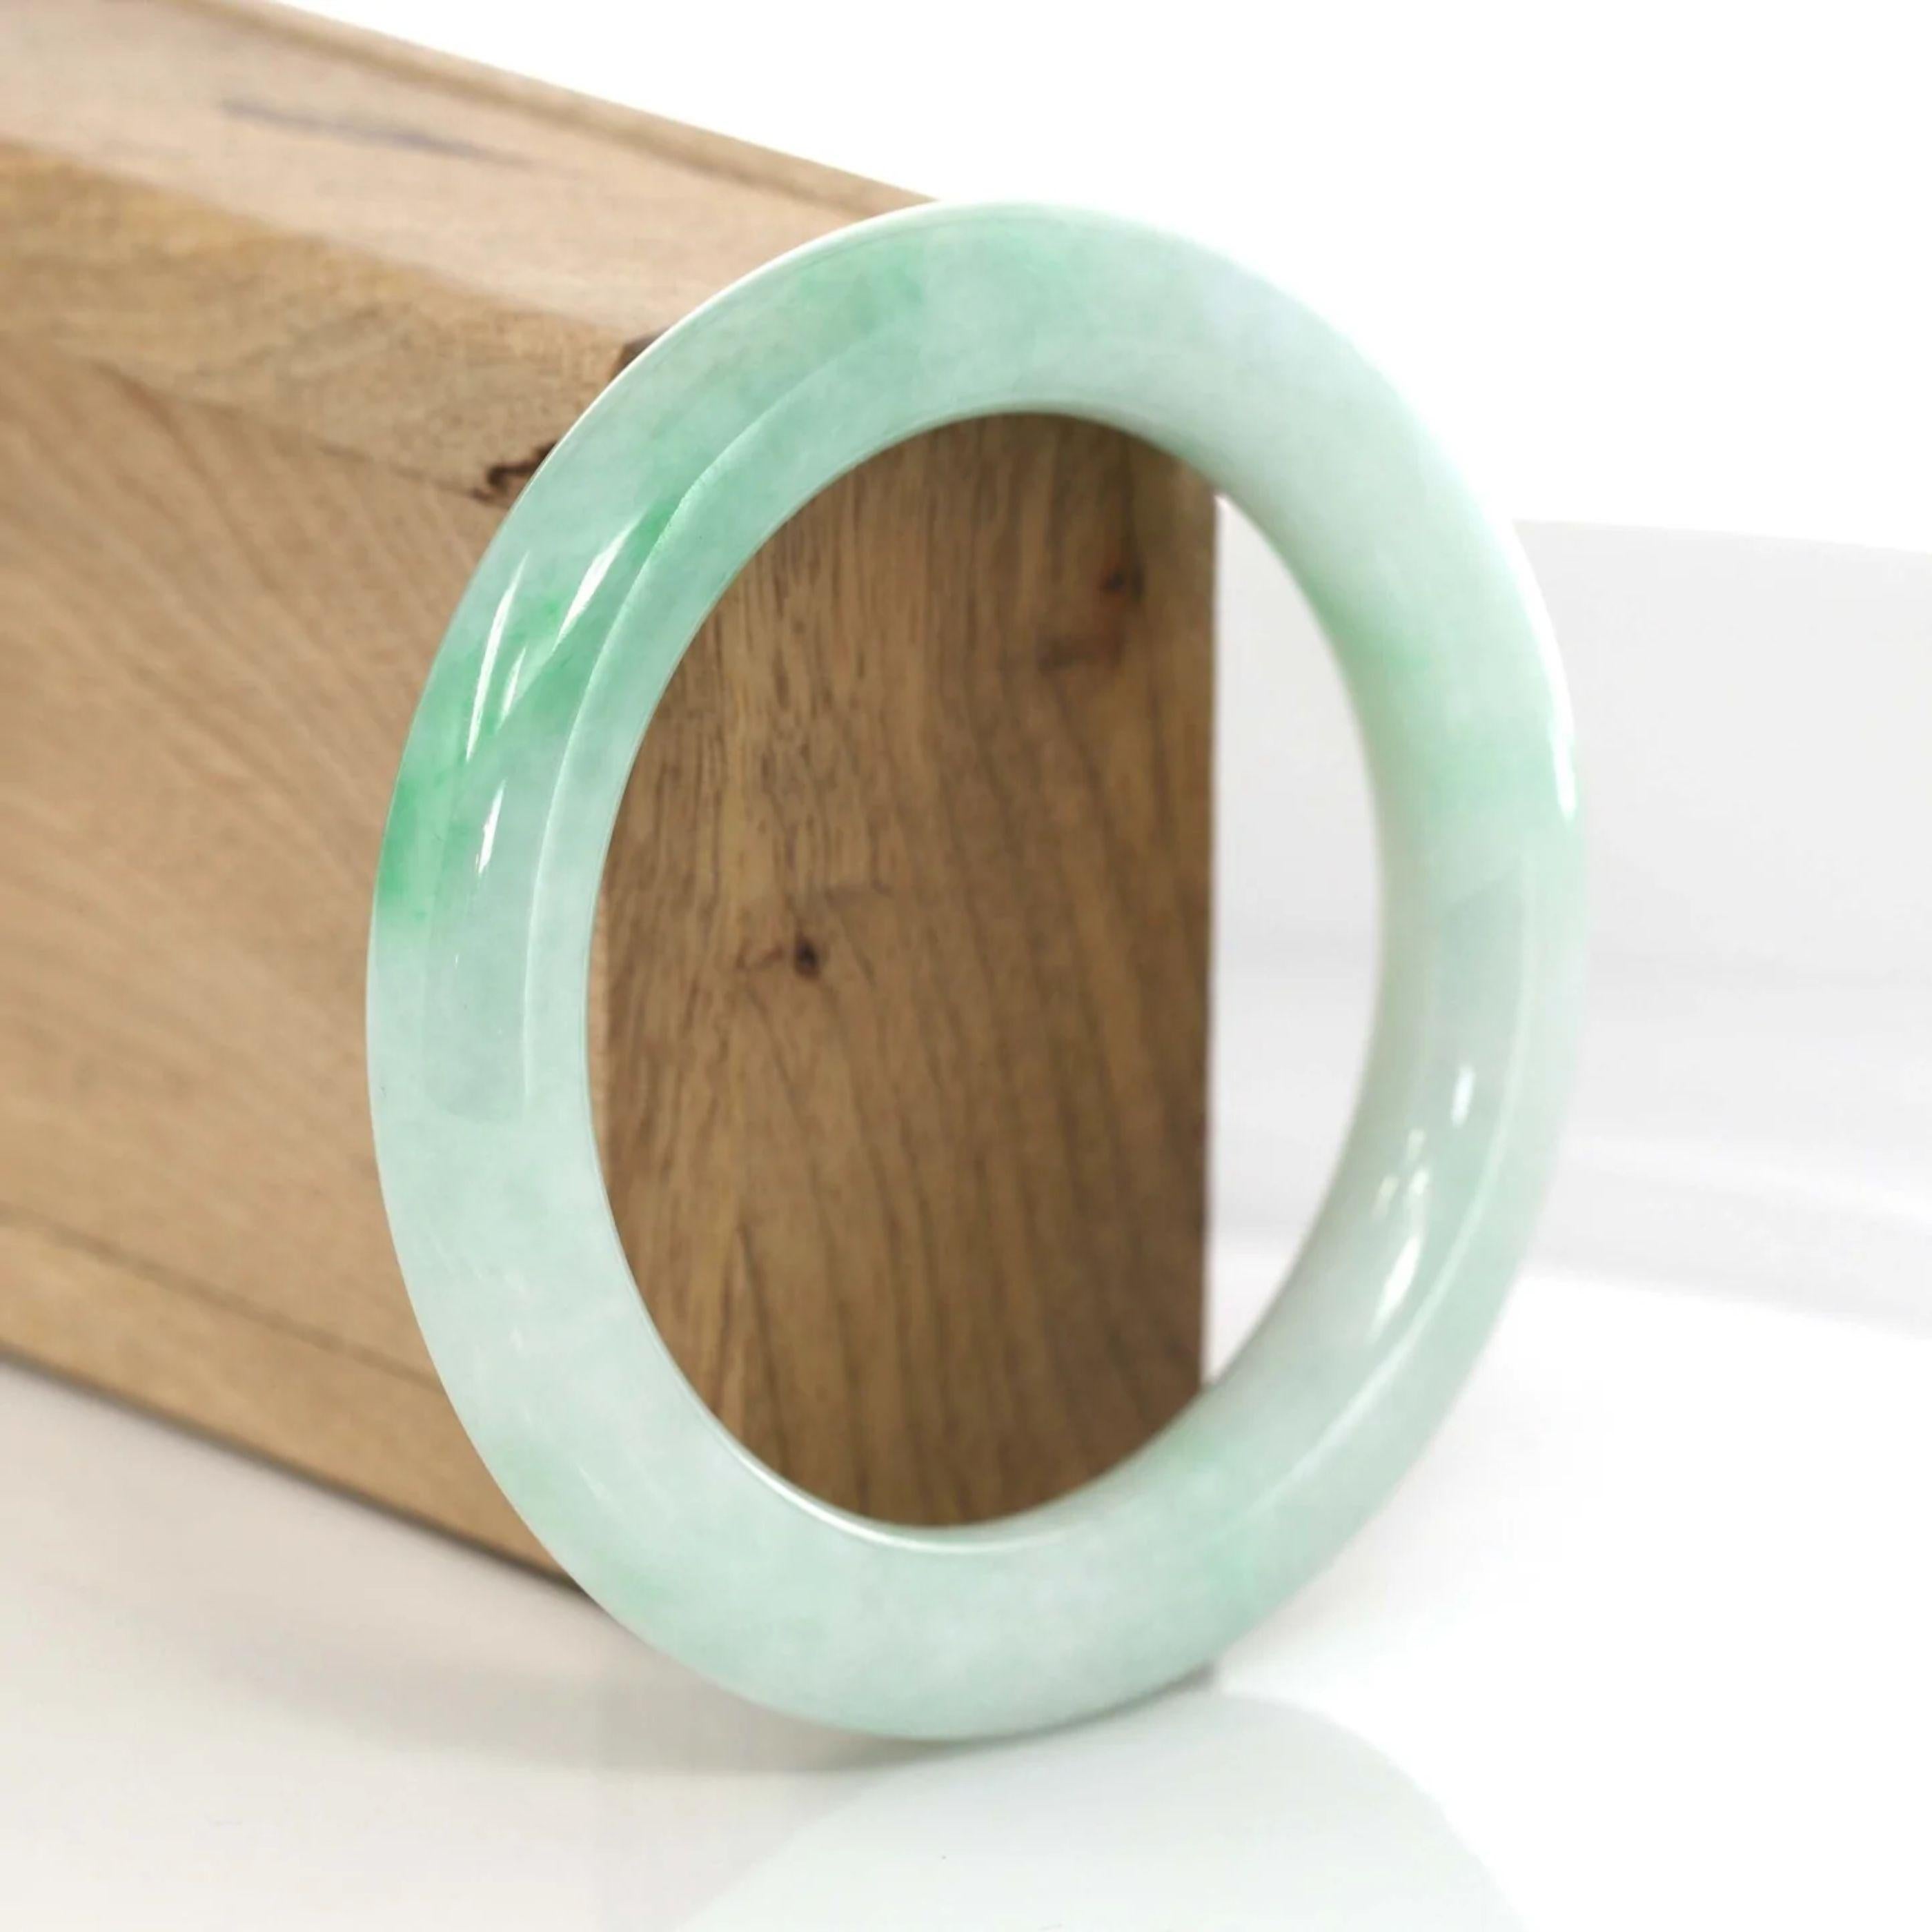 * DETAILS---Dieser Armreif ist aus echter grüner Jadeit-Jade gefertigt, die Jadetextur ist sehr glatt mit weißer Jade. Die grüne Farbe und die durchscheinende weiße Textur sind eine faszinierende Kombination. Das klassische runde Armband ist